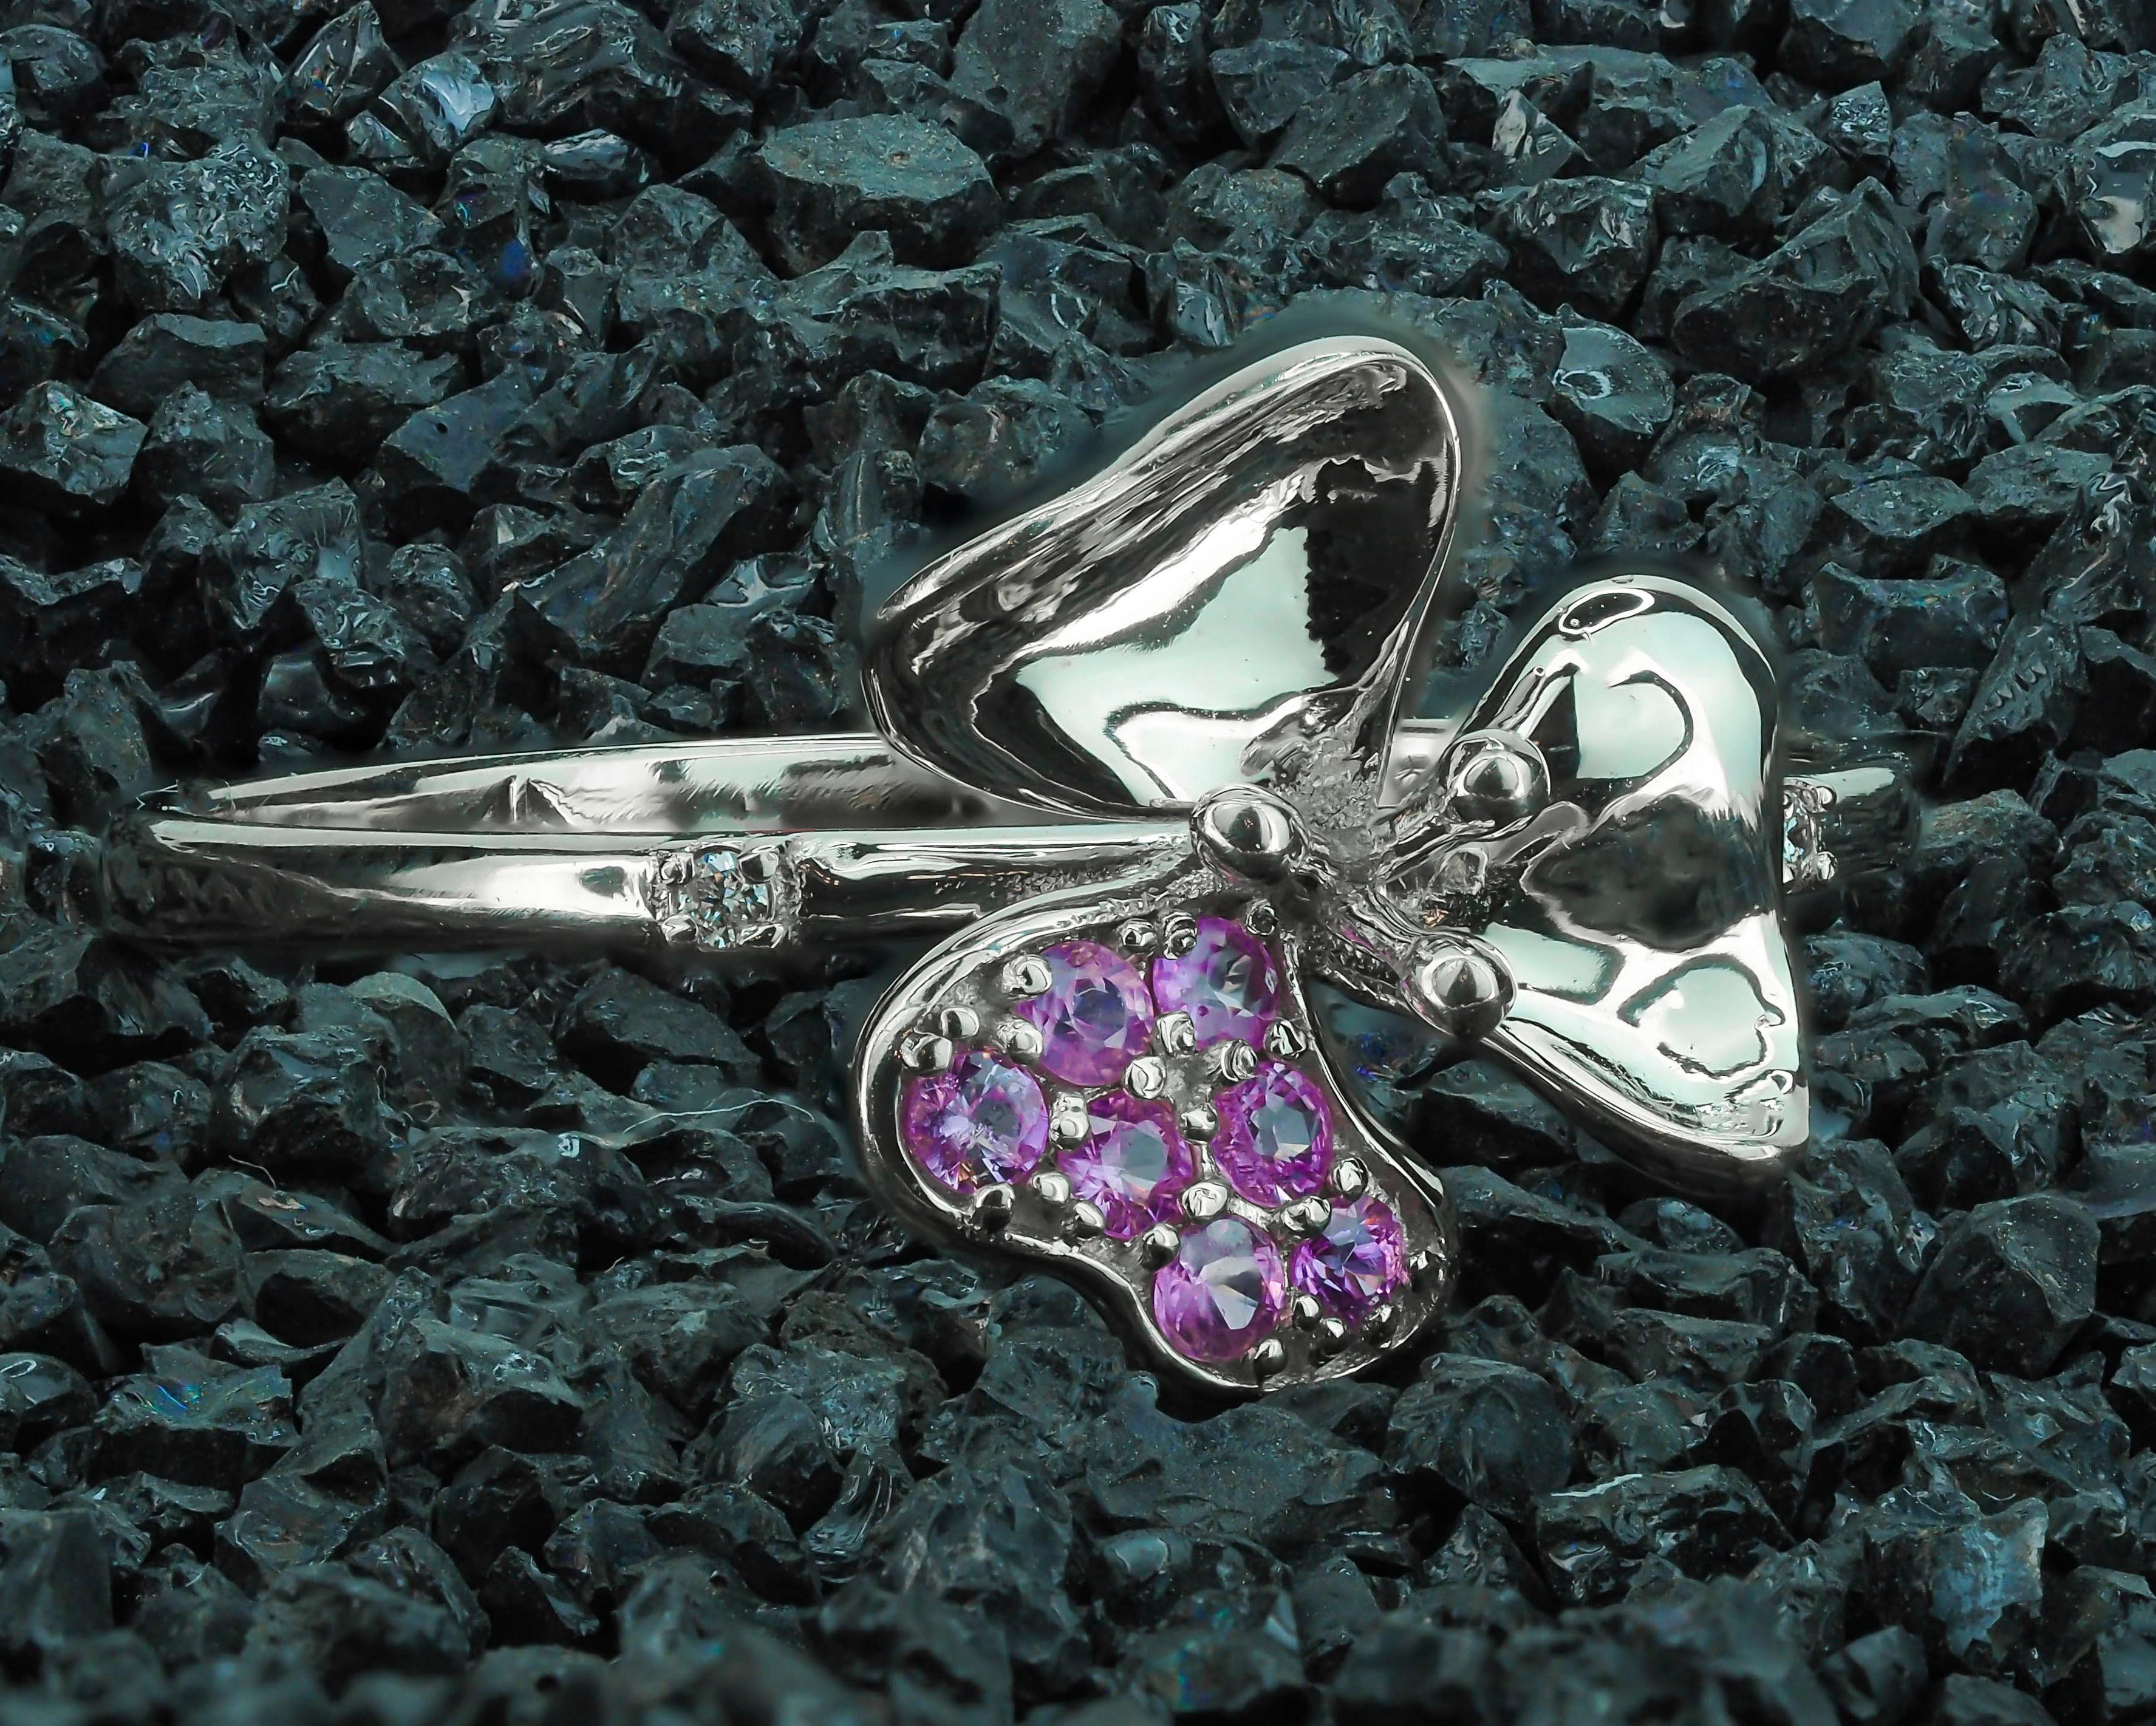 For Sale:  3 petal Flower 14k ring with gemstones. 2